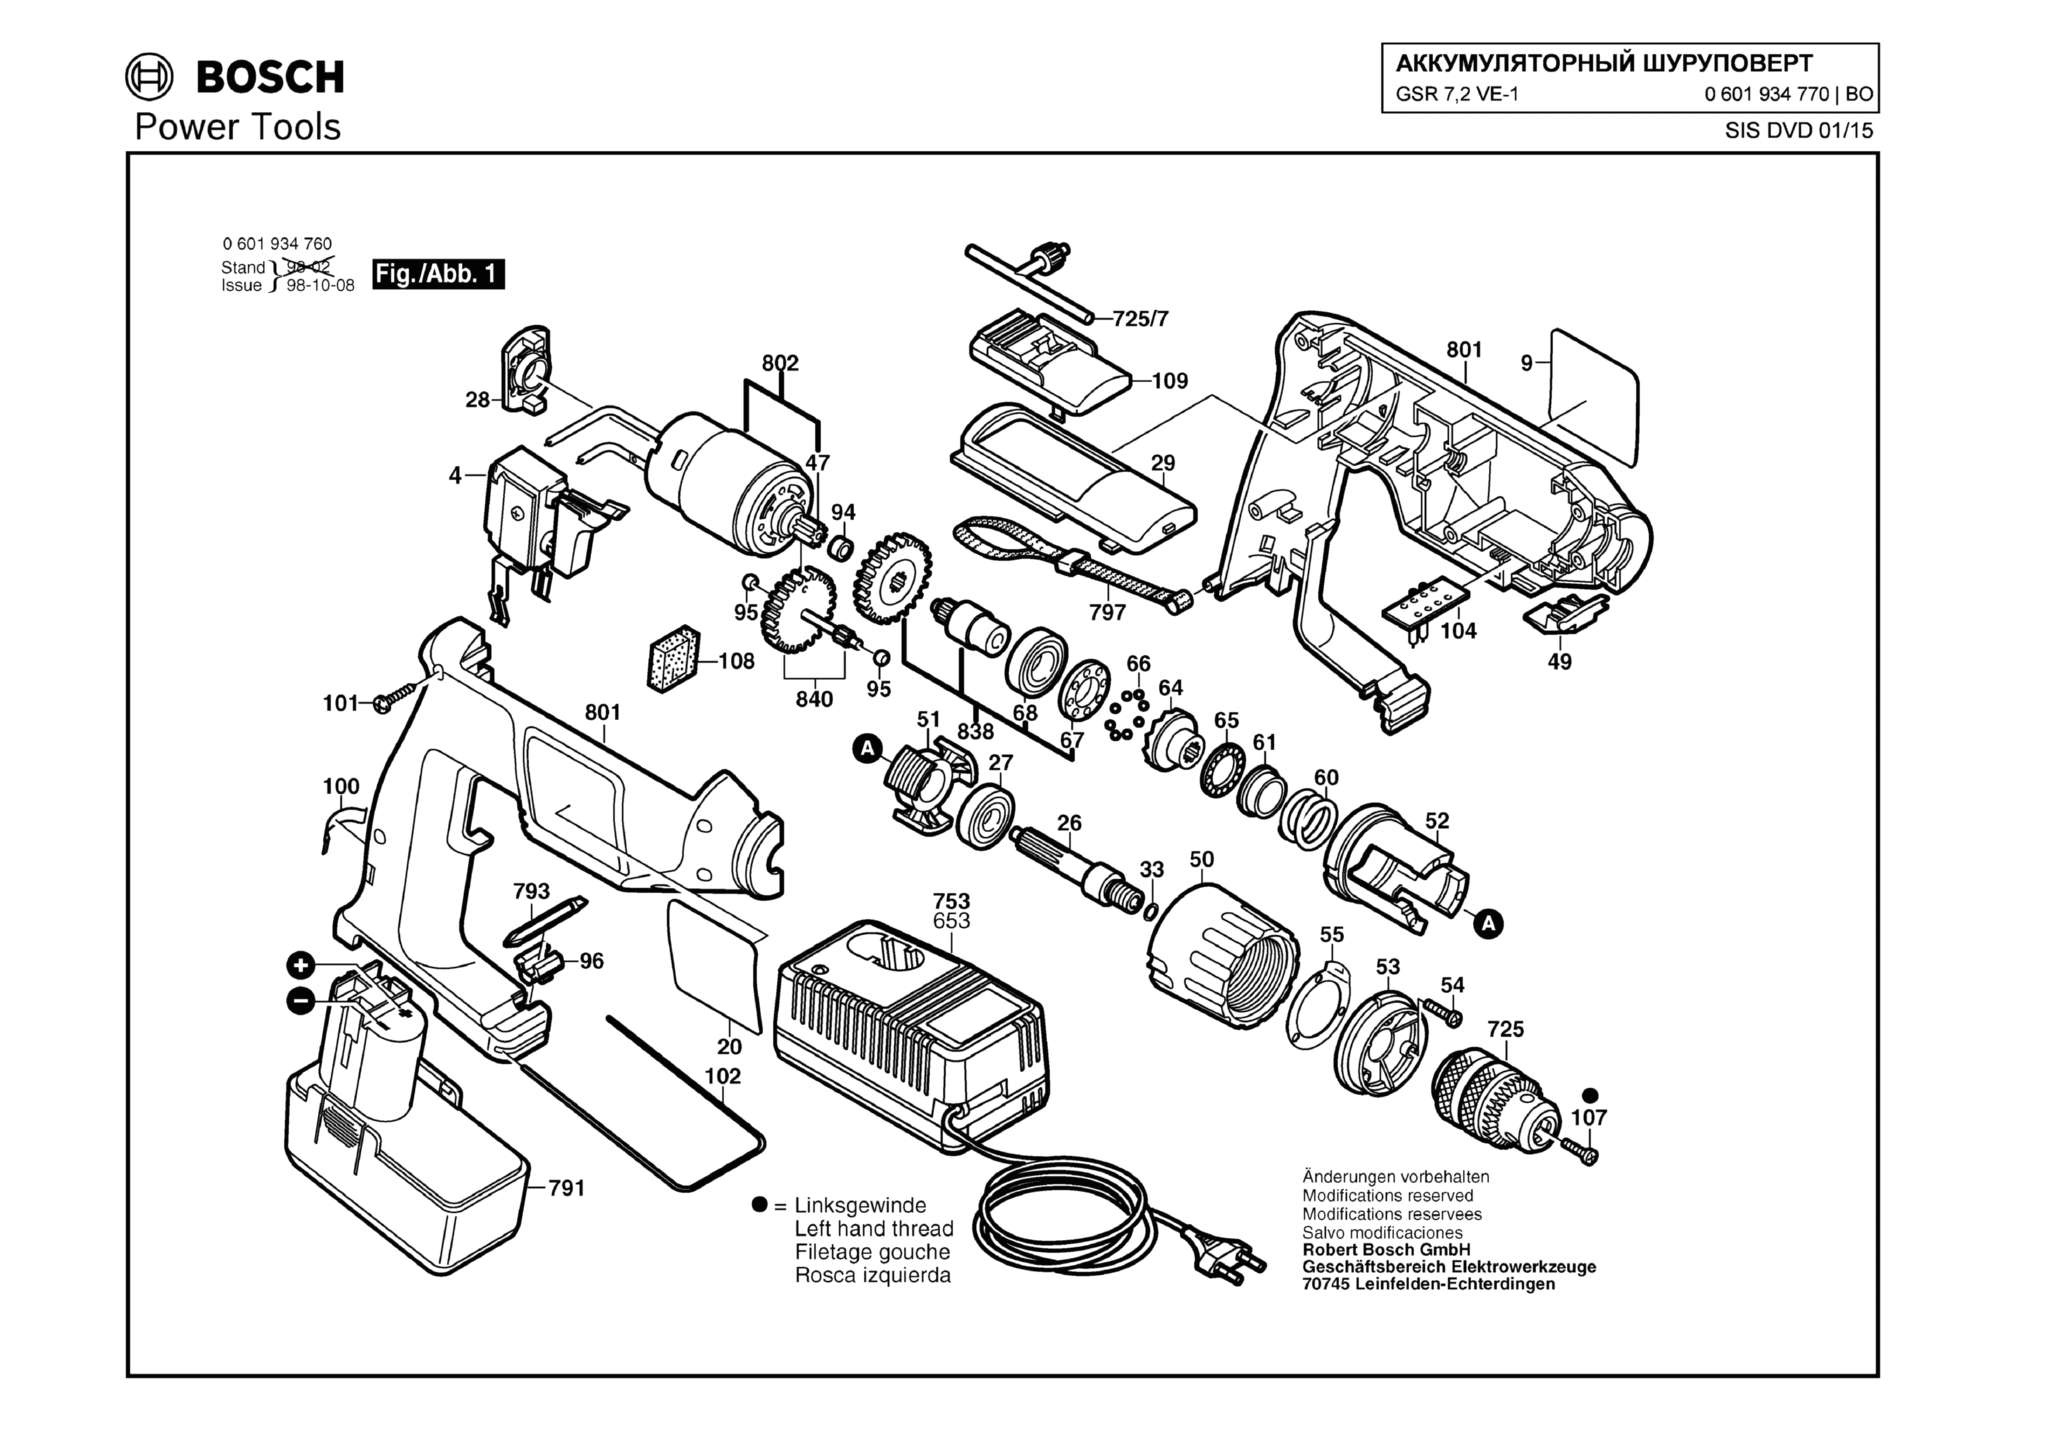 Запчасти, схема и деталировка Bosch GSR 7,2 VE-1 (ТИП 0601934770)